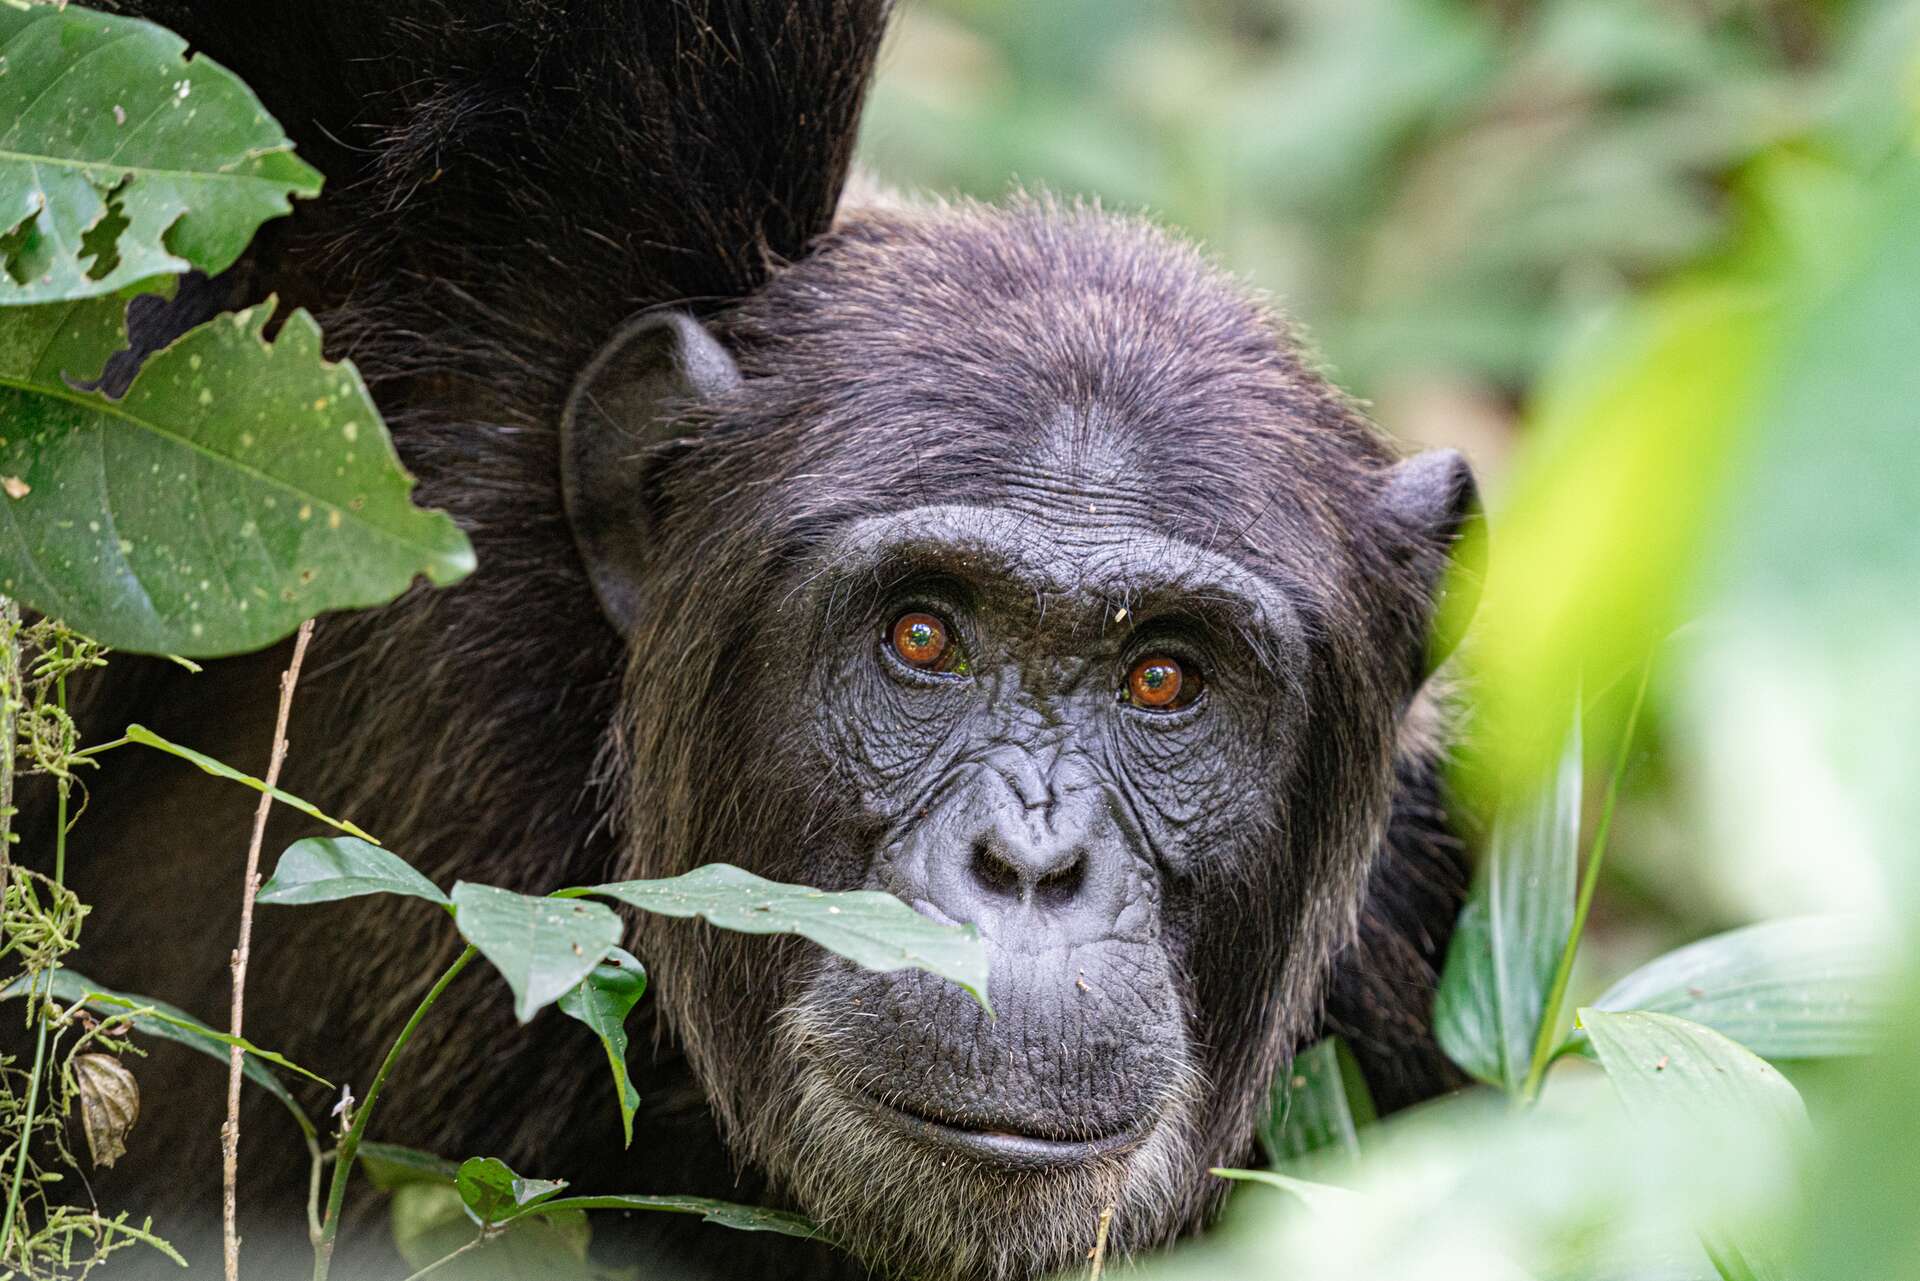 Chimpanzés : découvrez son intelligence en retraçant les pas de Jane Goodall